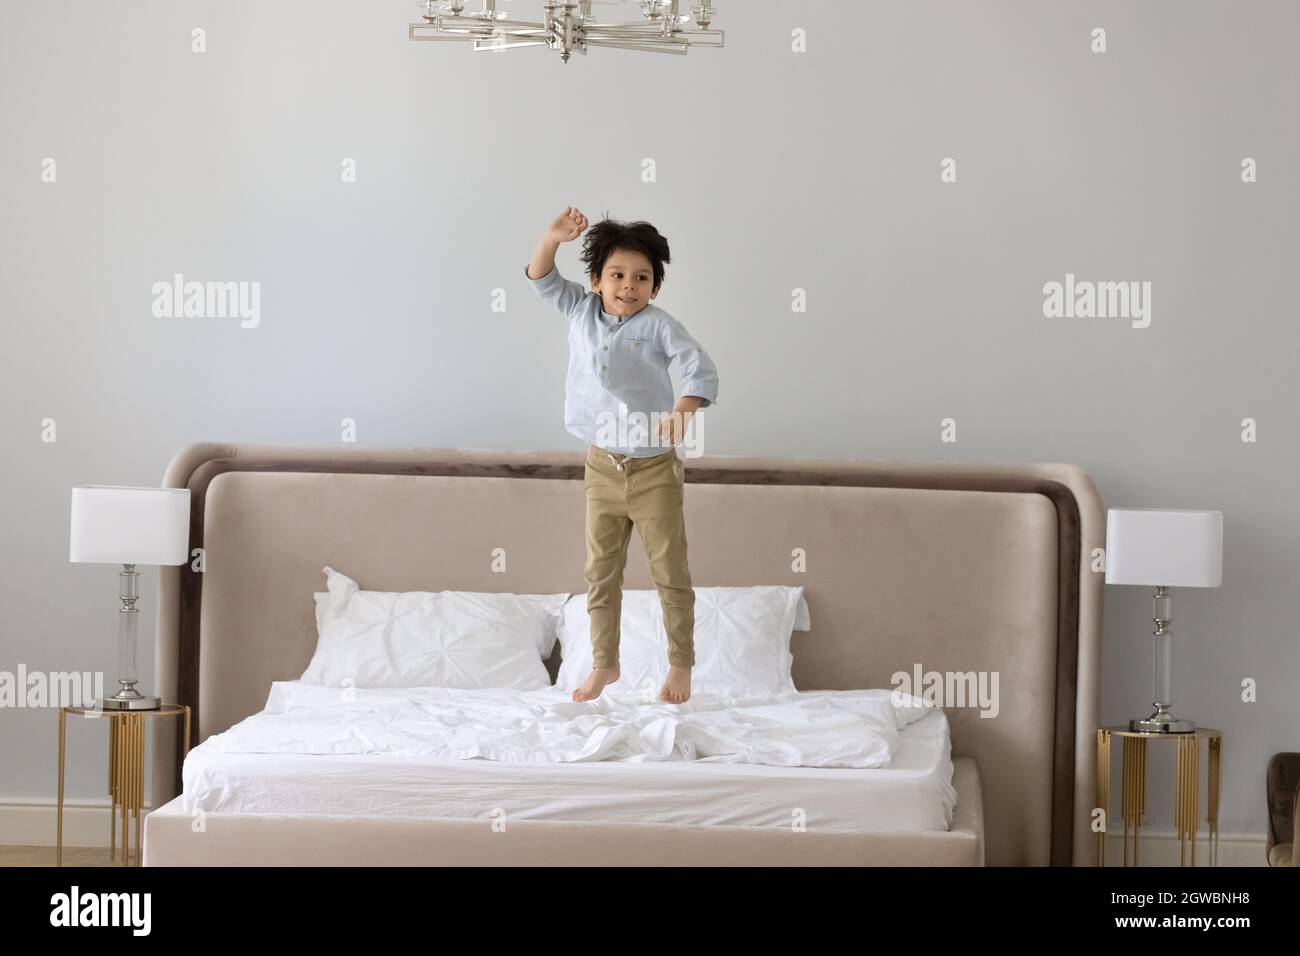 Fröhlicher kleiner Junge, der auf dem Bett springt. Stockfoto